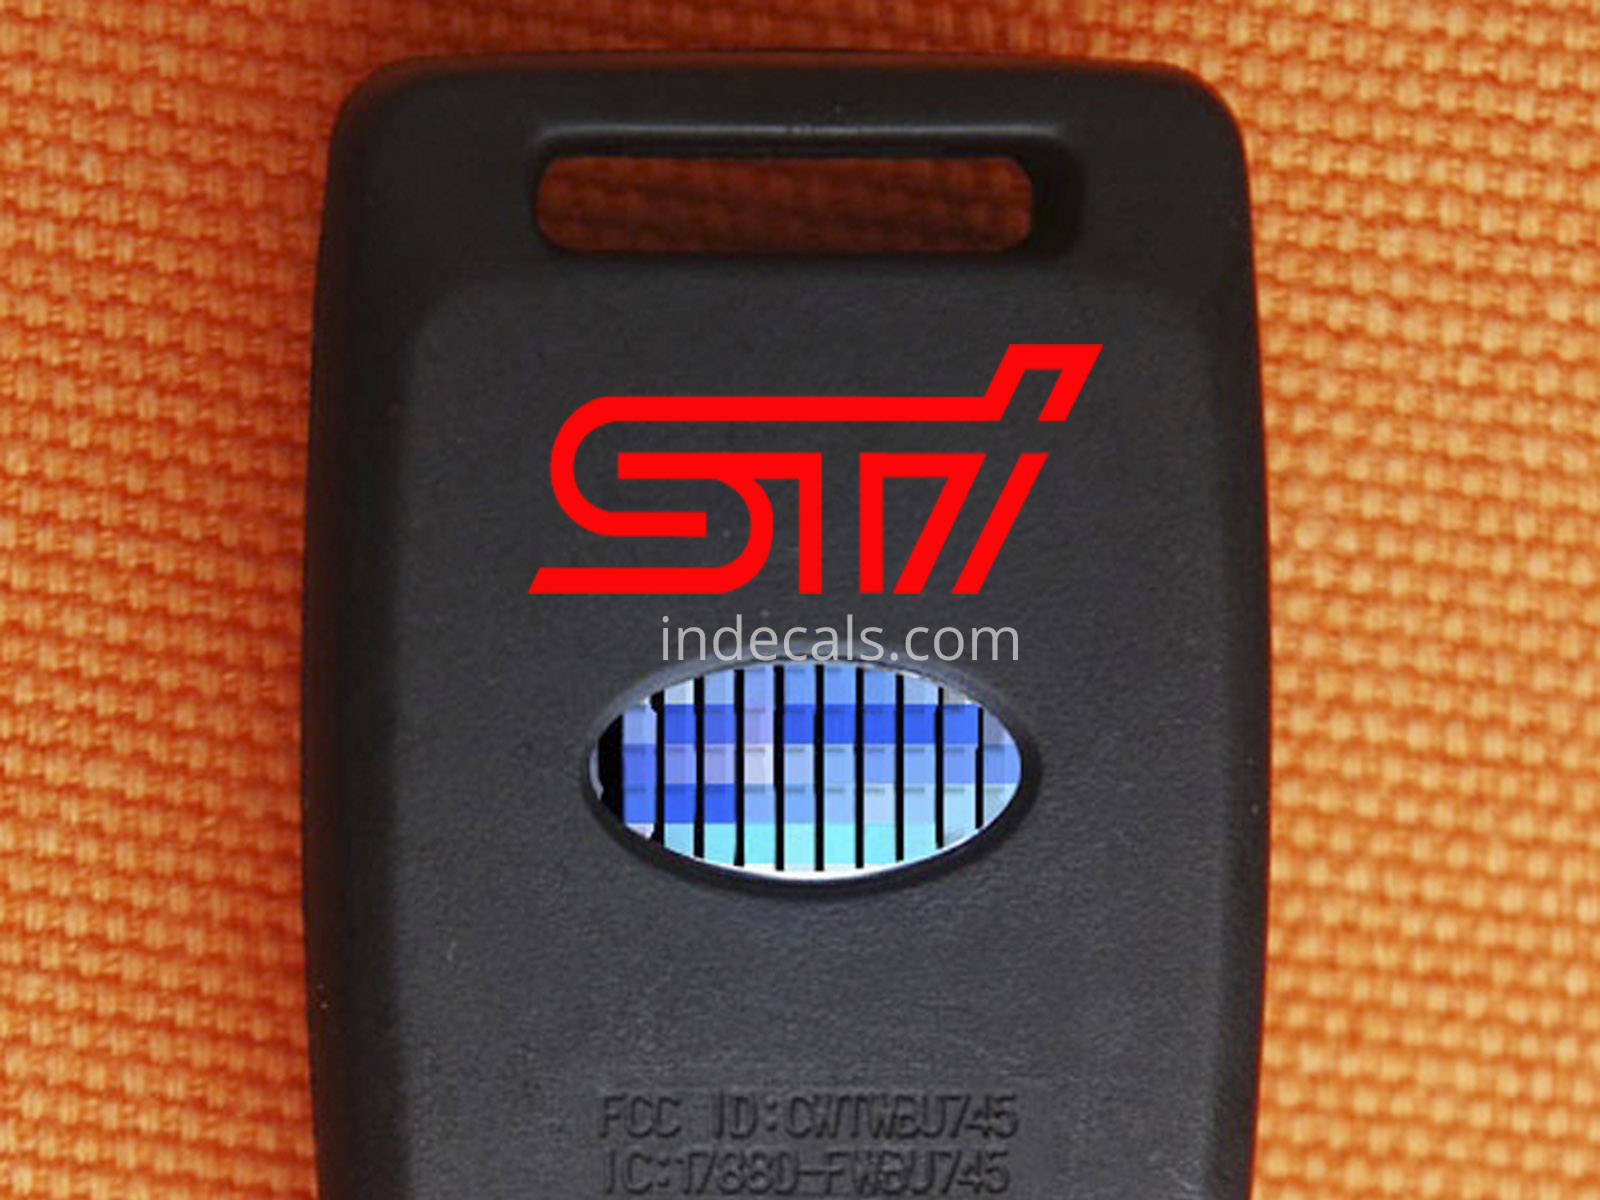 2 x Subaru STI stickers for Key Fob - Red